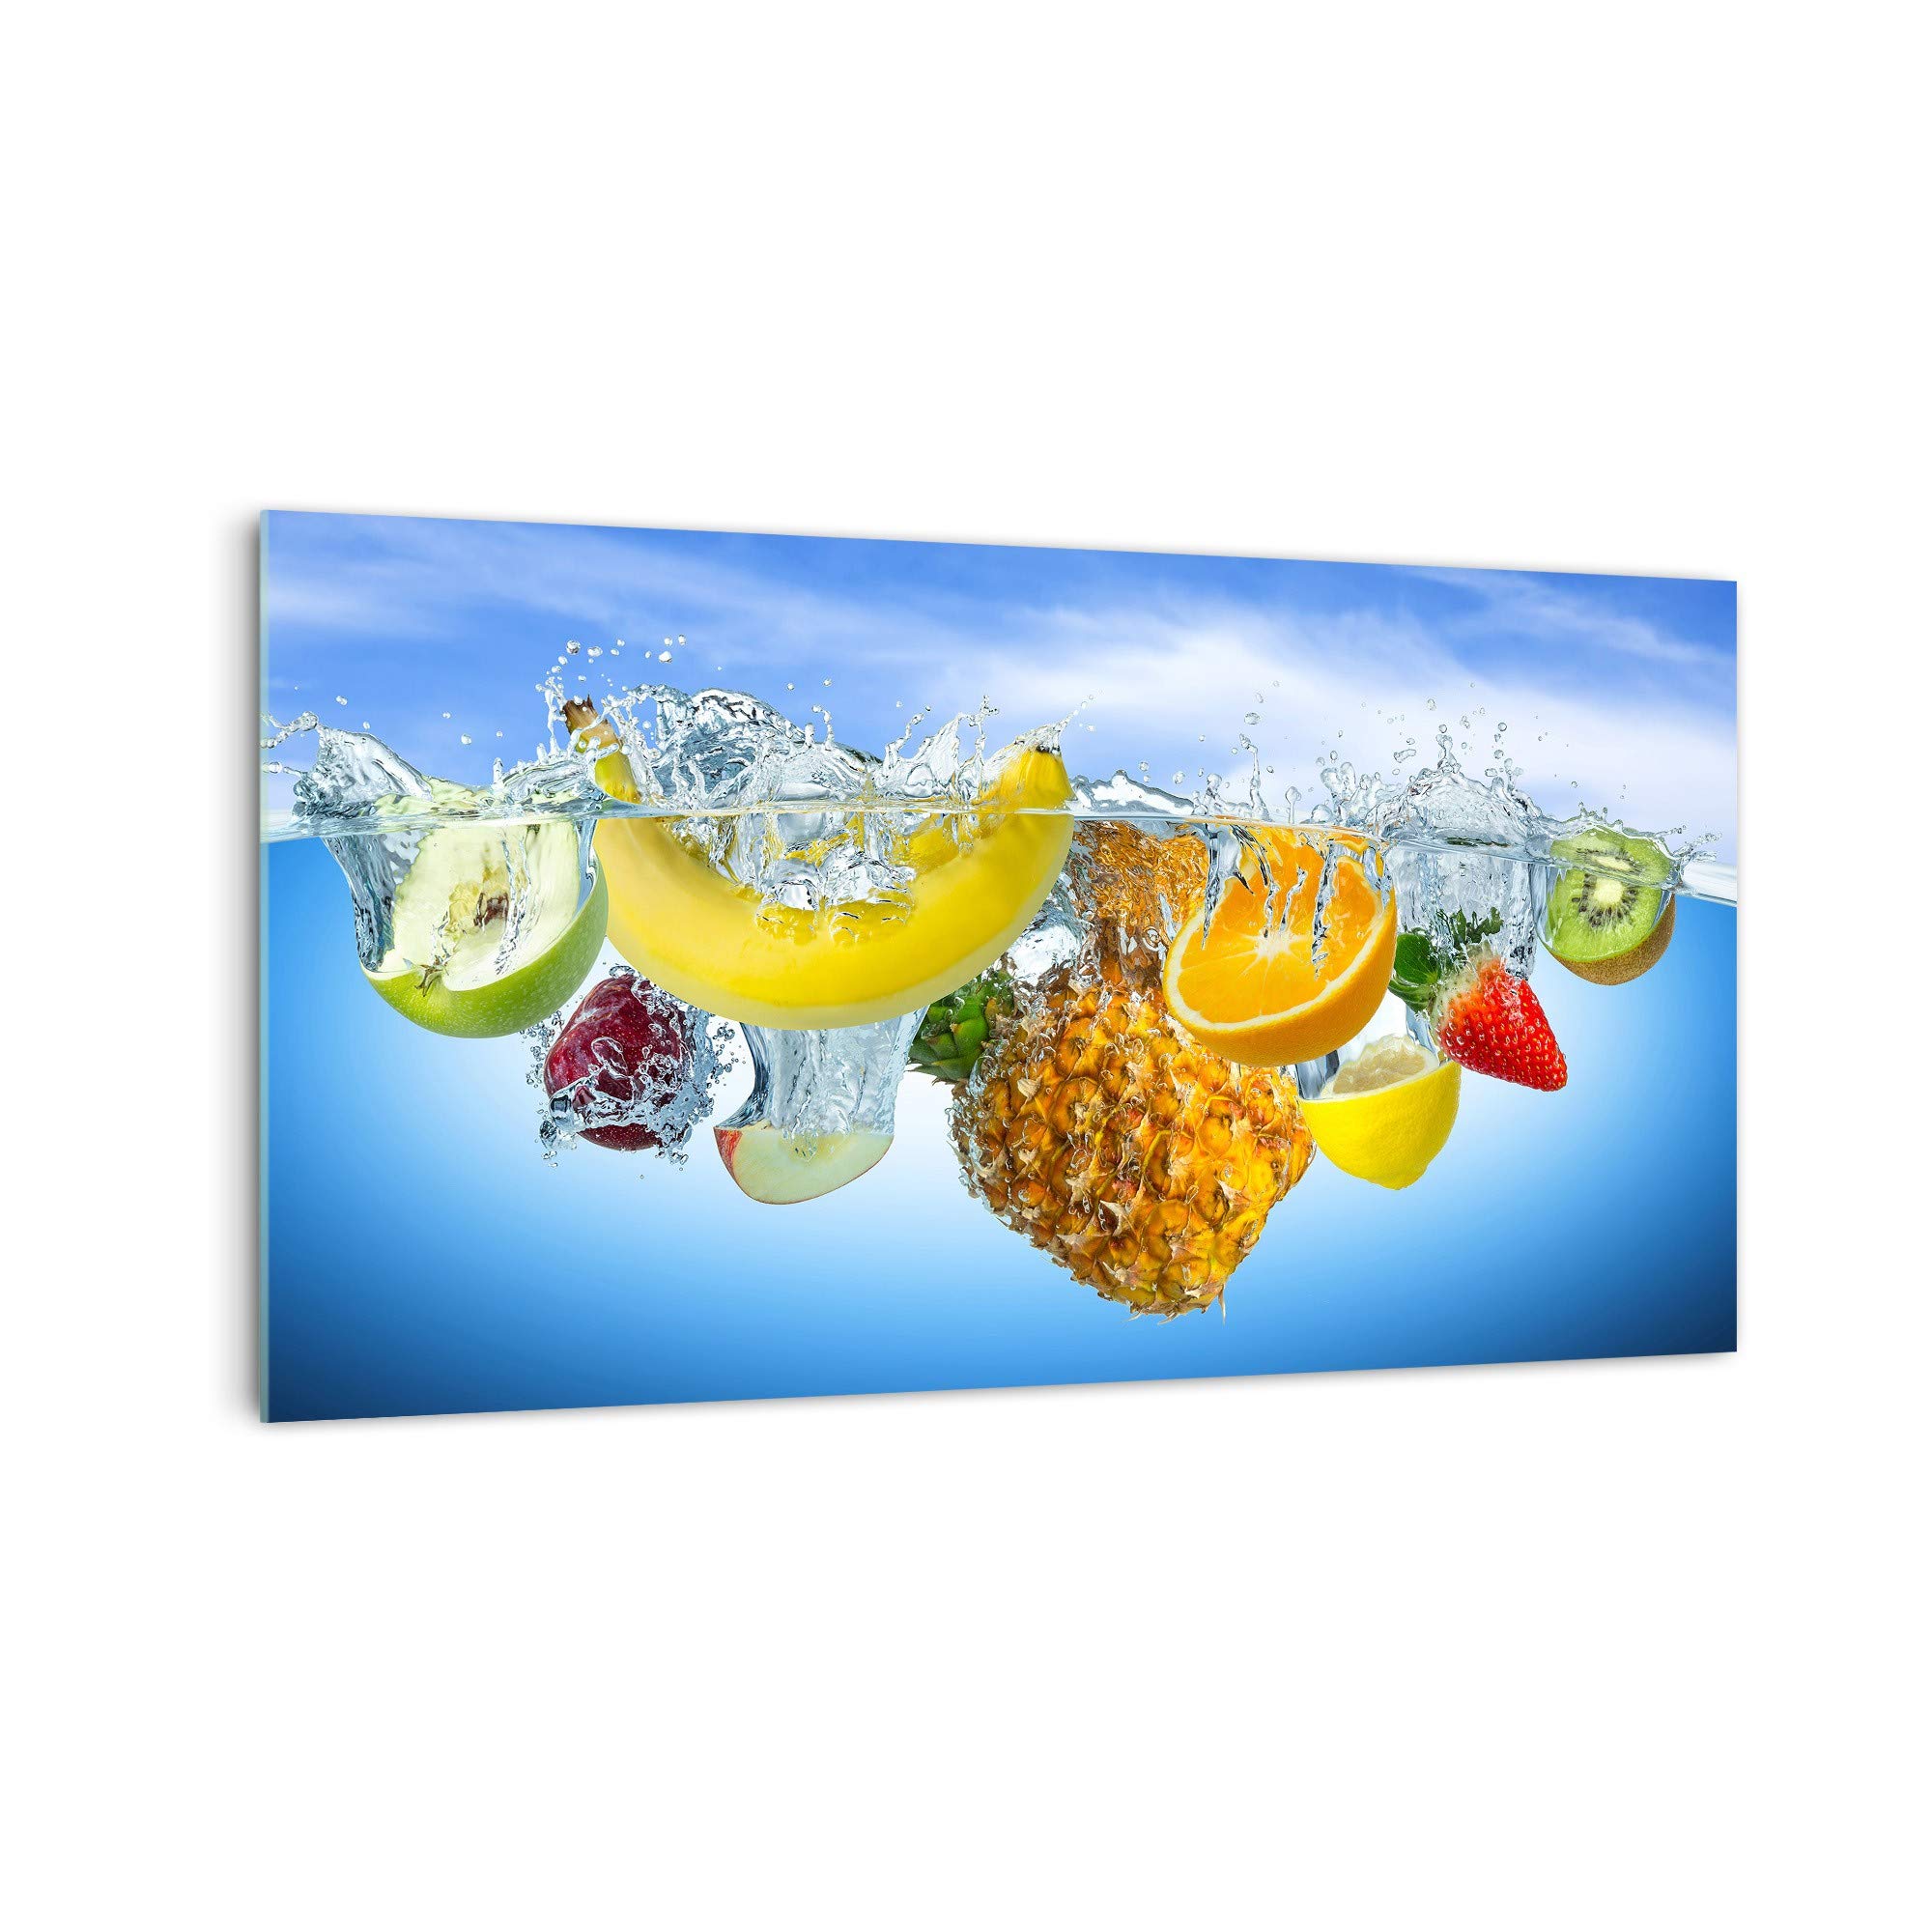 DekoGlas Küchenrückwand 'Obst im Wasser II' in div. Größen, Glas-Rückwand, Wandpaneele, Spritzschutz & Fliesenspiegel